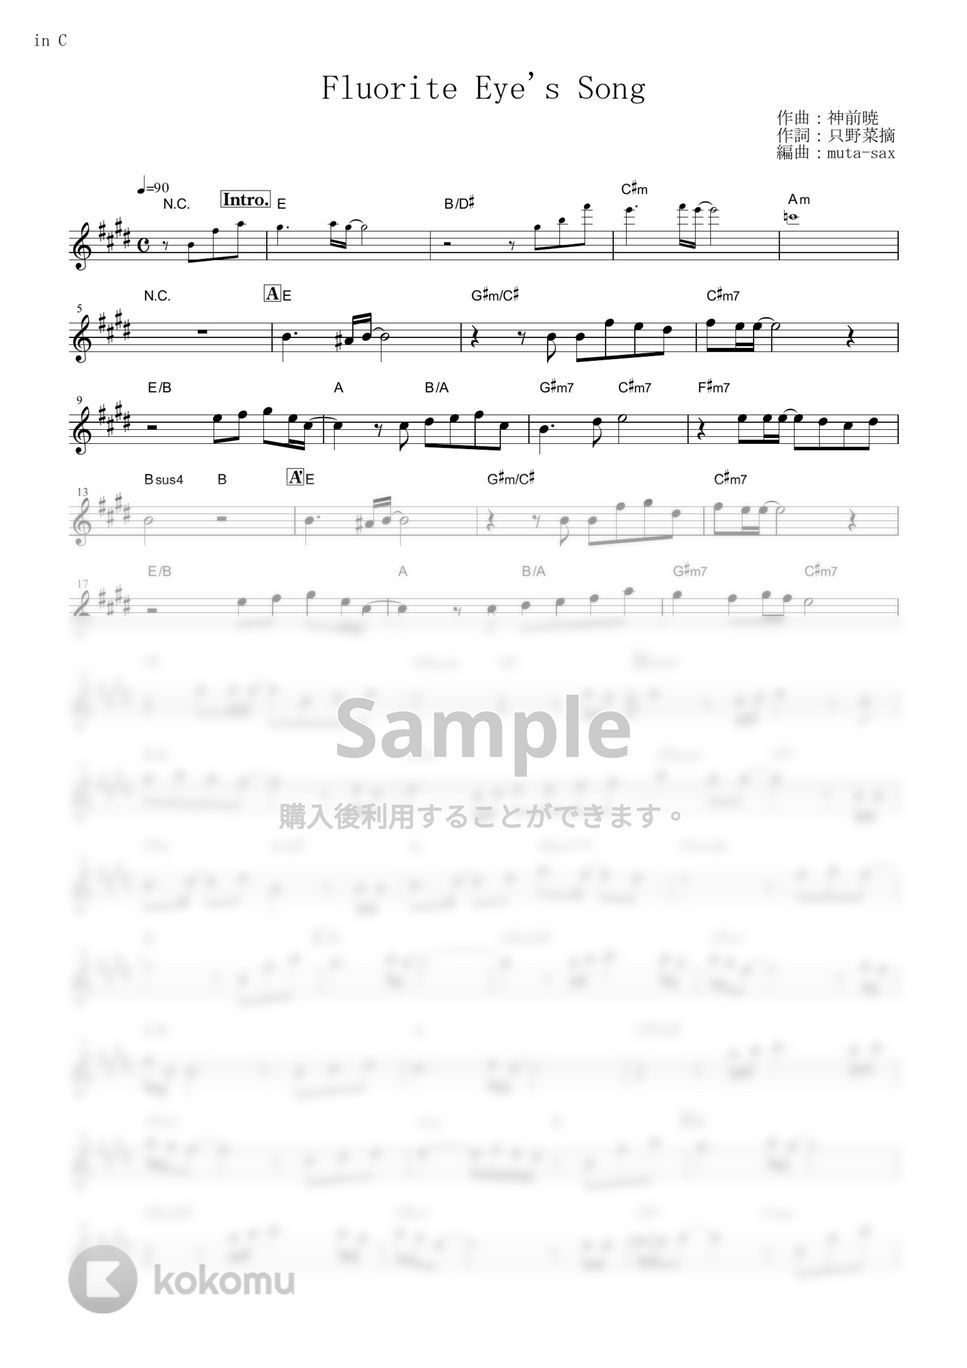 ヴィヴィ（Vo.八木海莉） - Fluorite Eye's Song (『Vivy -Fluorite Eye’s Song-』 / in C) by muta-sax